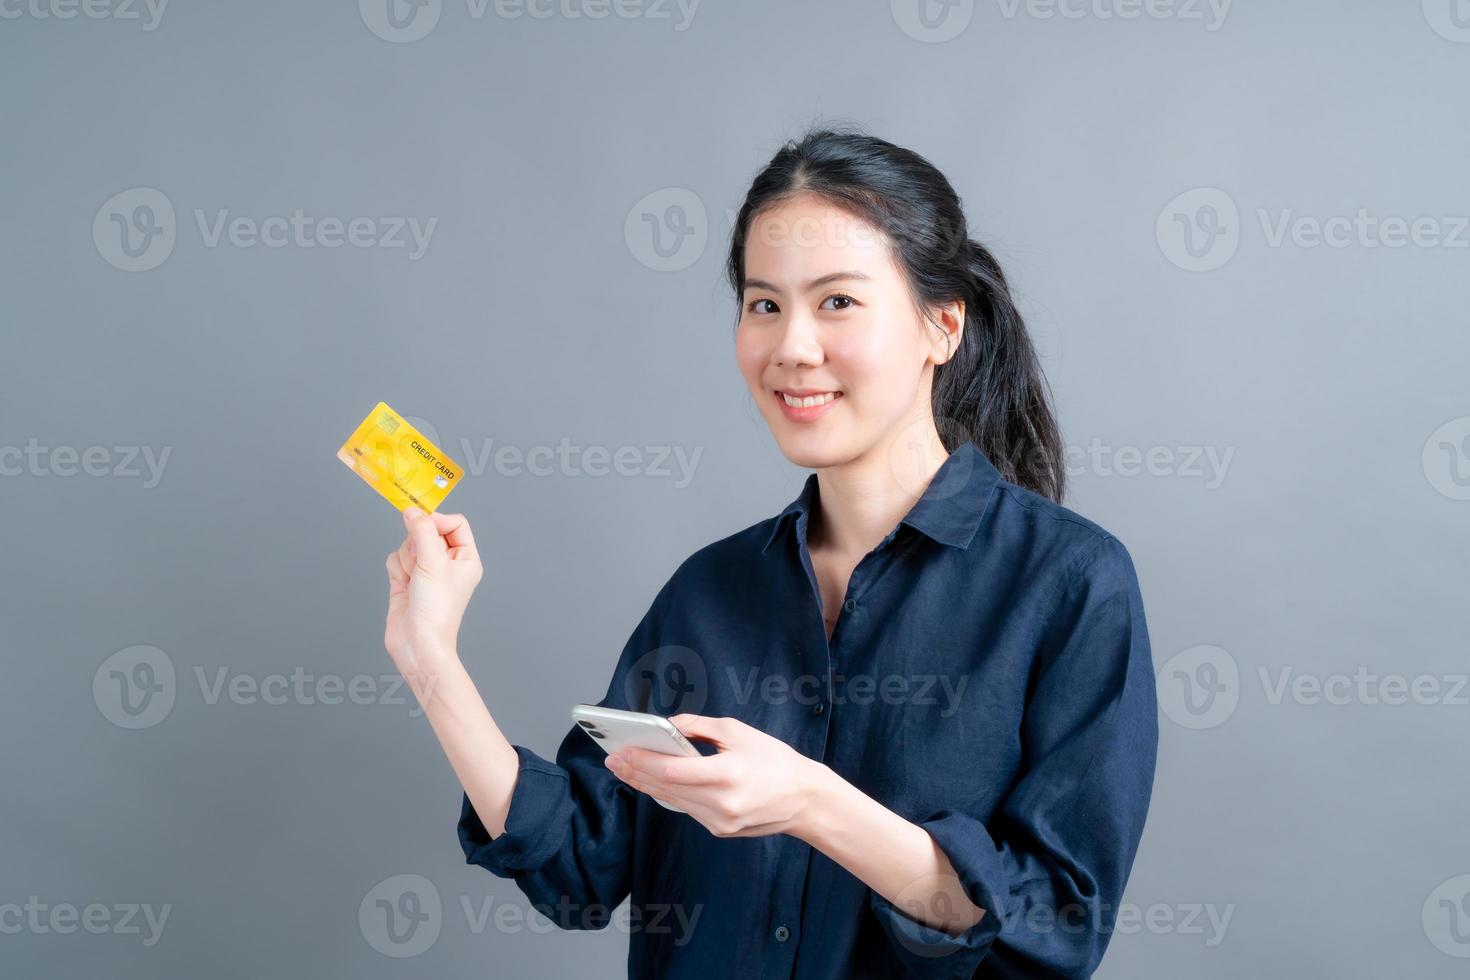 jovem asiática mostrando um cartão de crédito de plástico enquanto segura um telefone celular foto